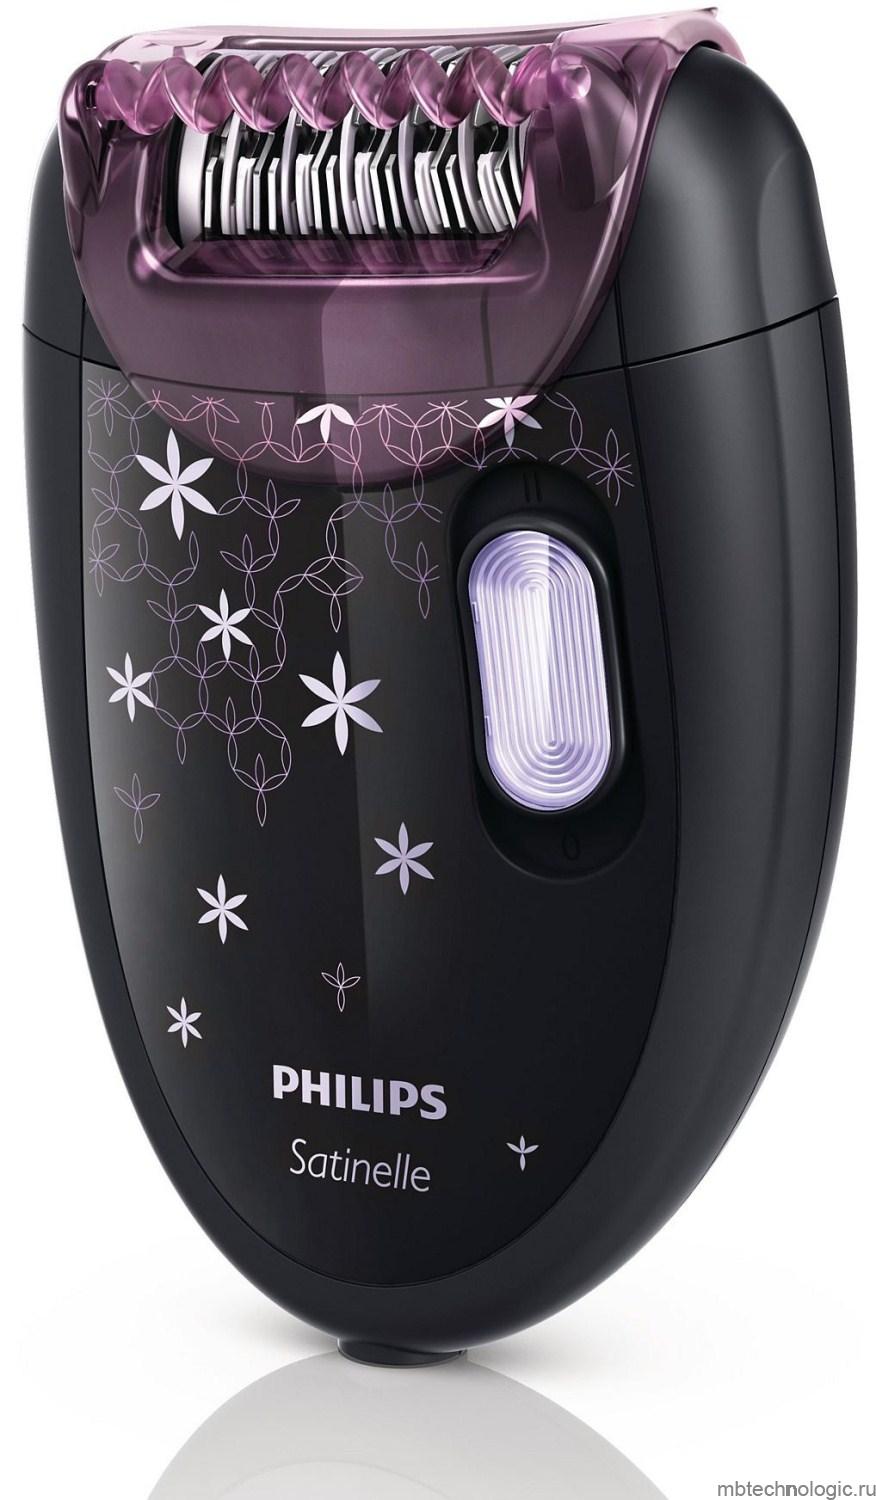 Philips HP 6422